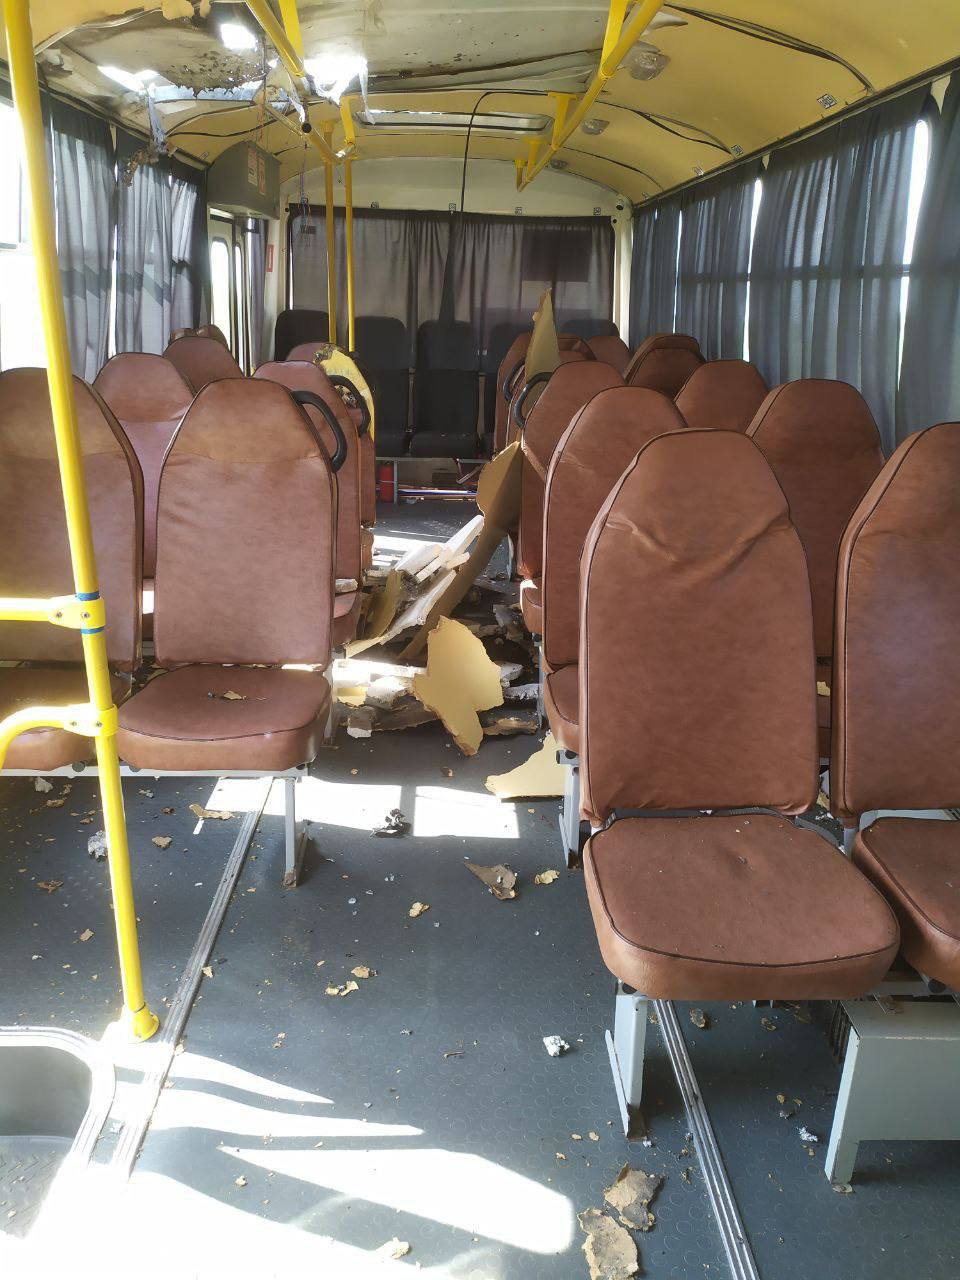 БПЛА атаковали транспорт в Белгородской области. В служебном автобусе контузило мужчину